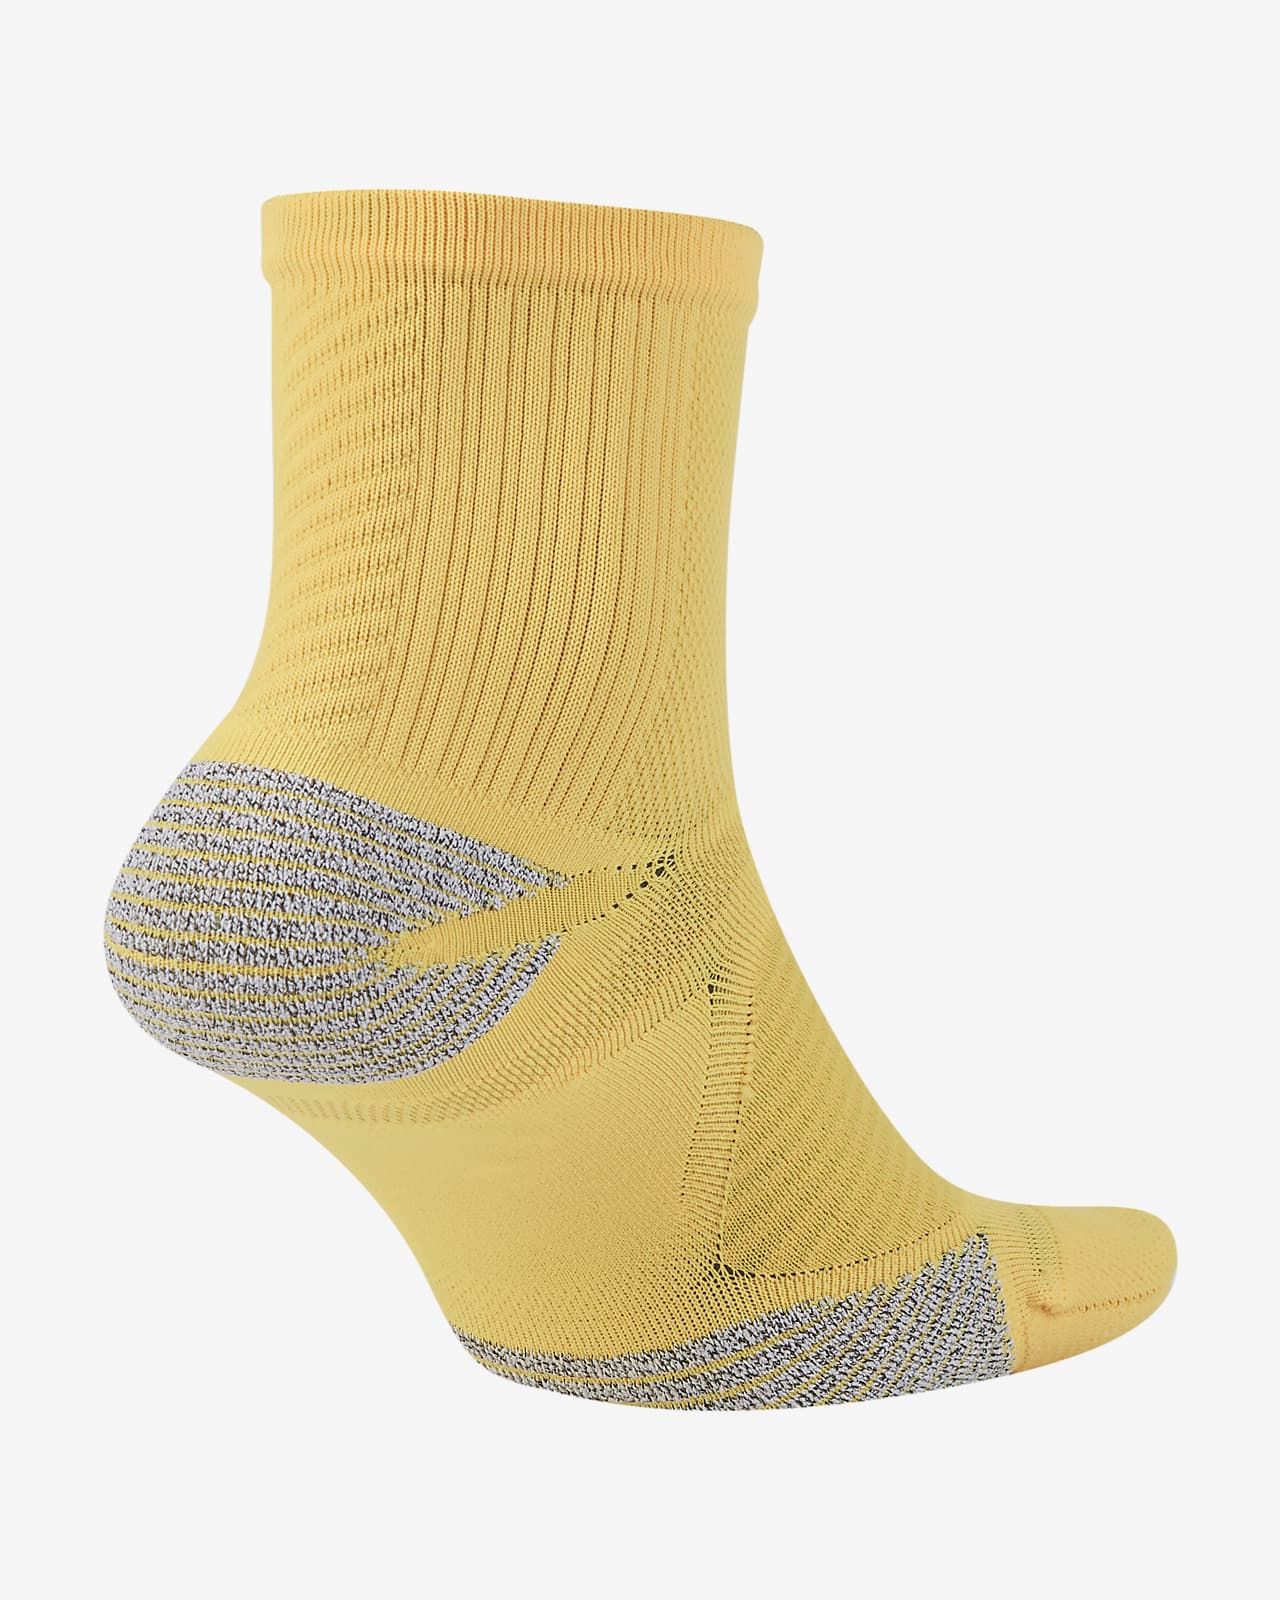 Nike Racing Ankle Socks. Nike SA